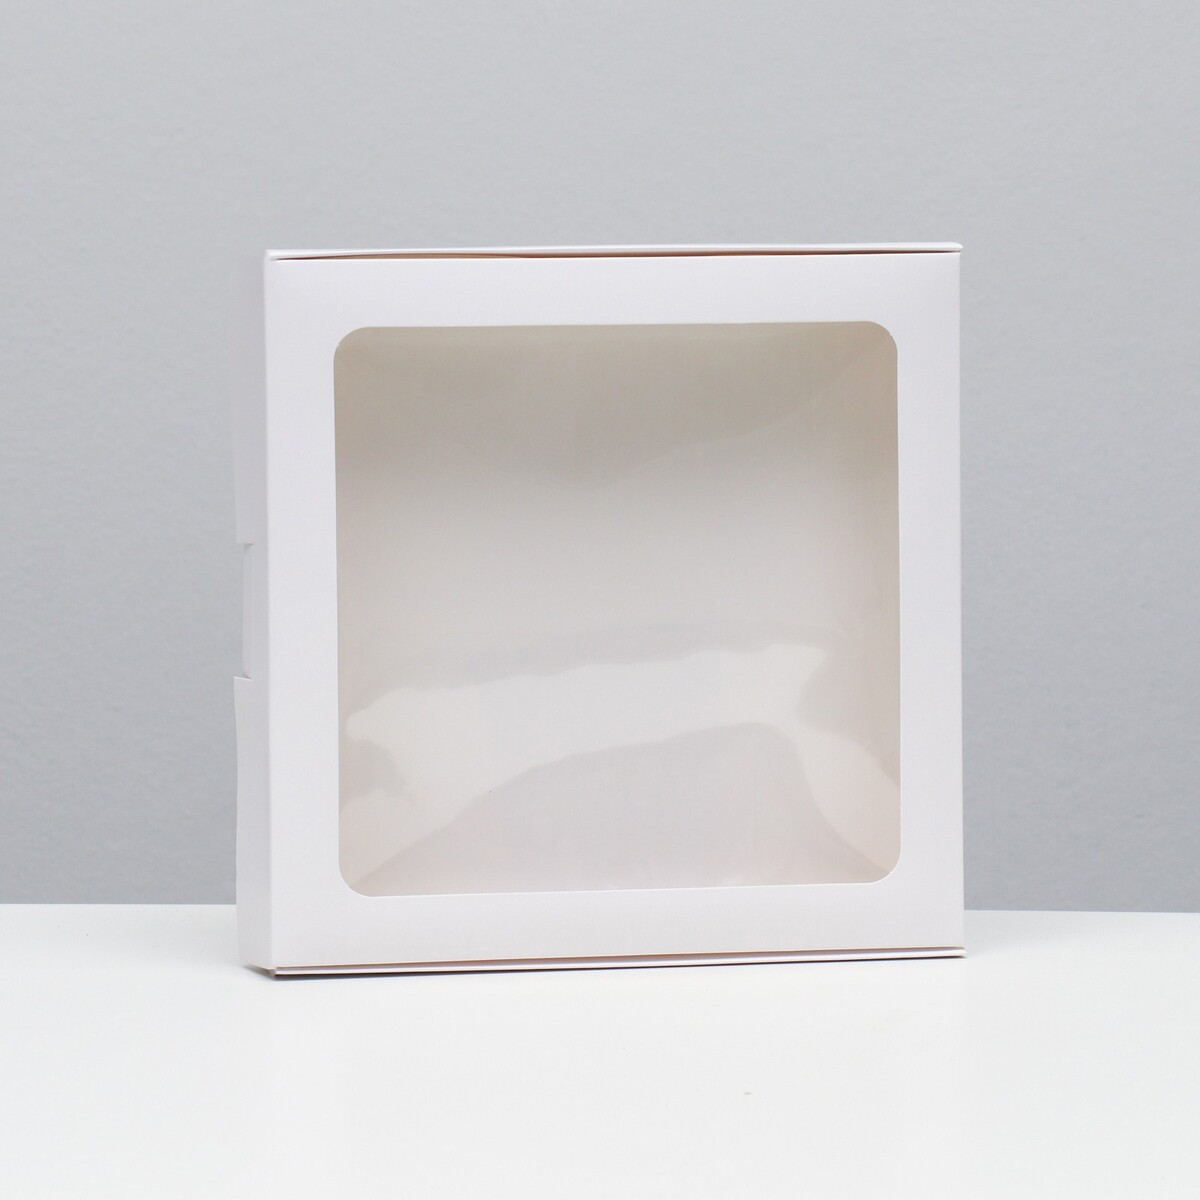 Коробка самосборная, белая, 21 х 21 х 3 см коробка самосборная белая 19 х 19 х 3 см